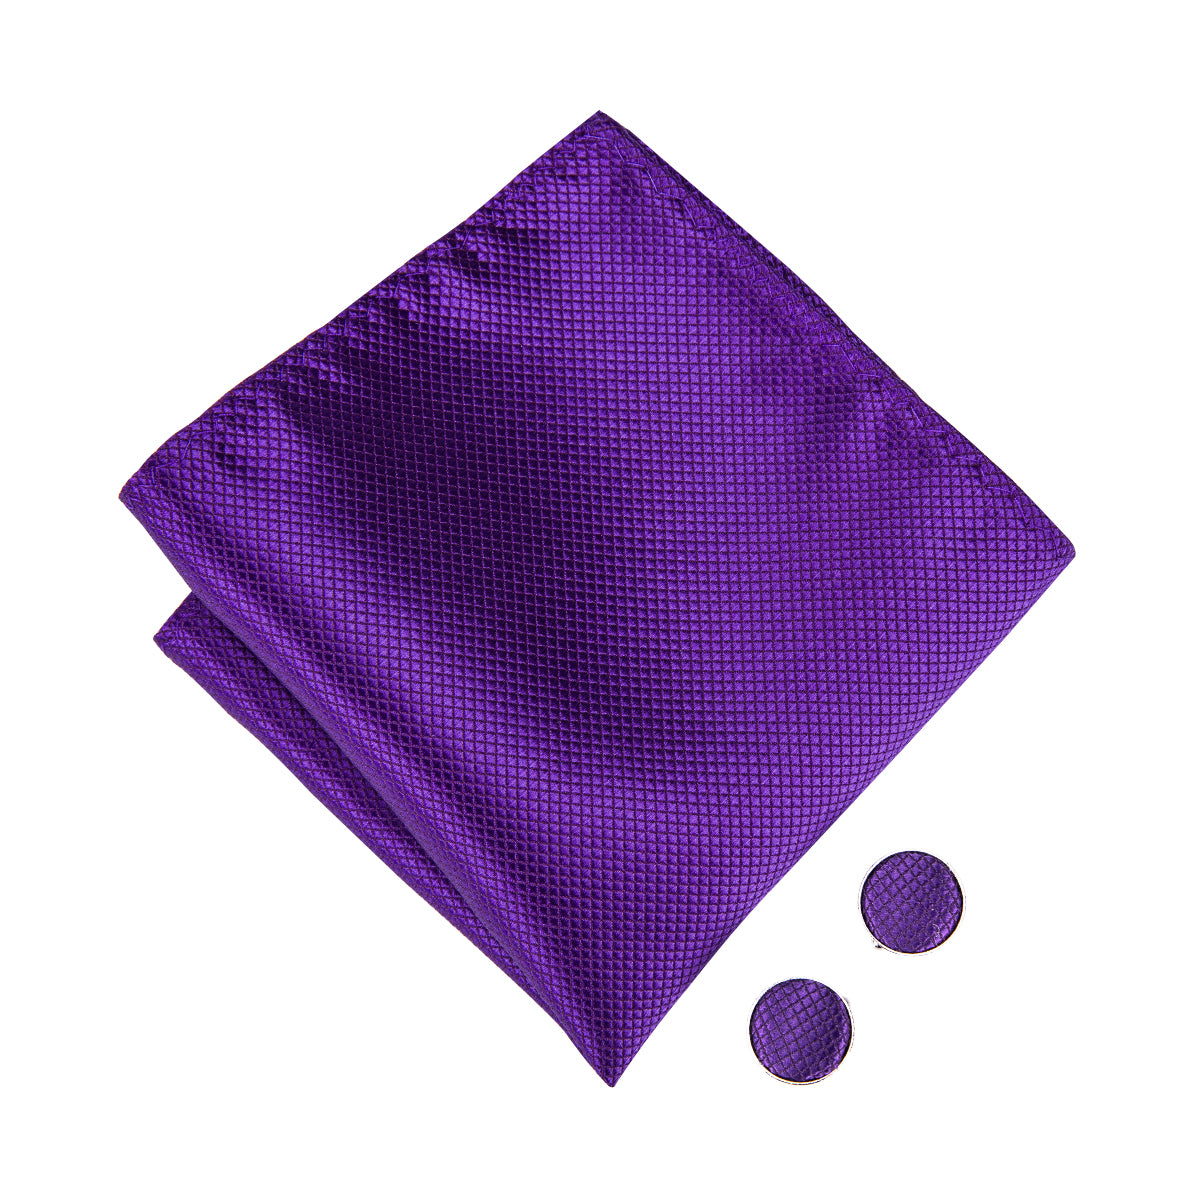 Solid Purple Pre-tied Bow Tie Hanky Cufflinks Set